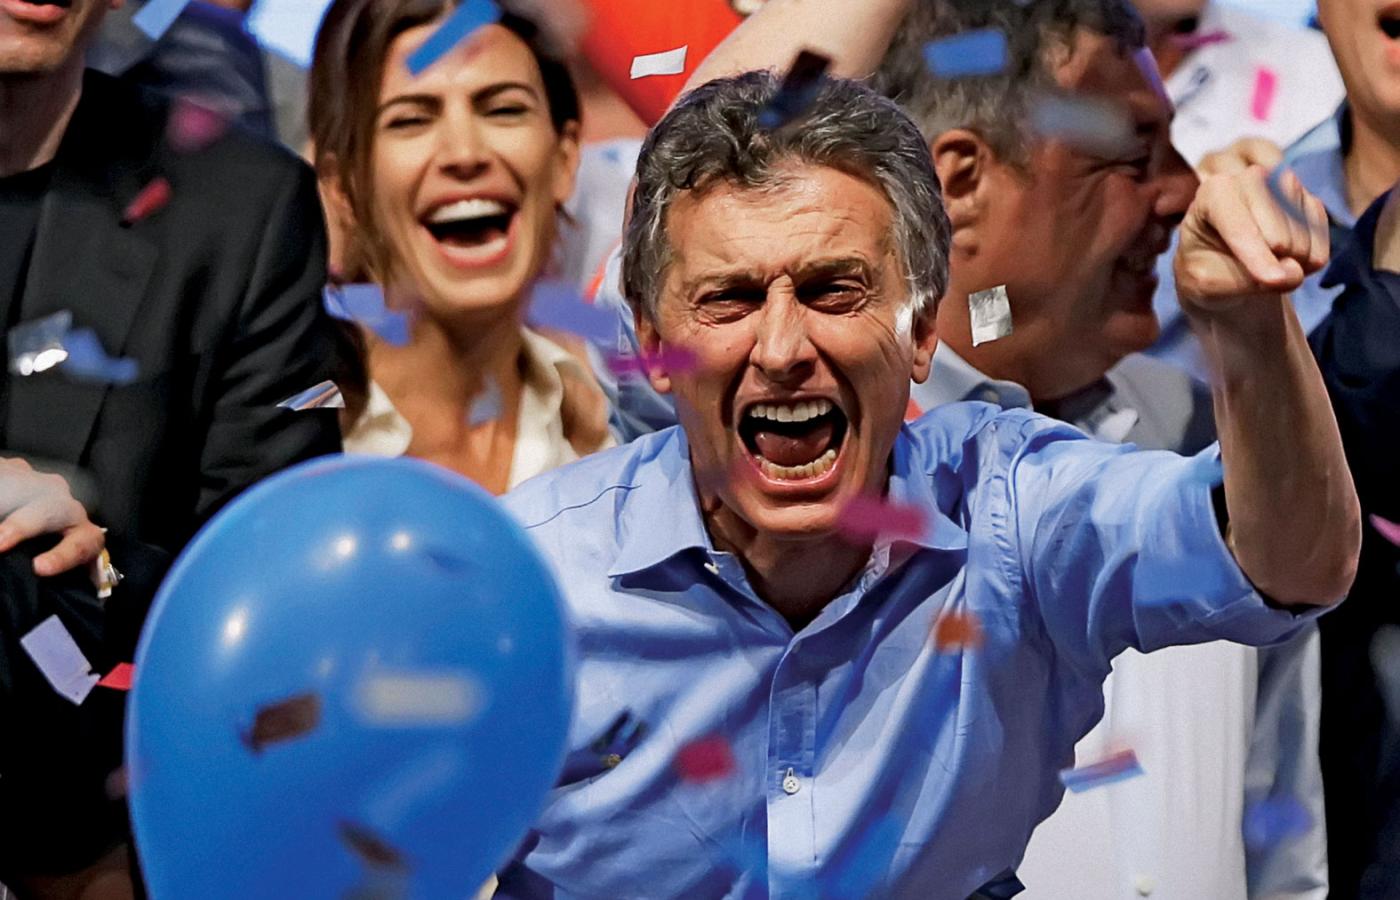 Mauricio Macri i jego żona Juliana Awada cieszą się po zwycięstwie w wyborach prezydenckich, Buenos Aires, listopad 2015 r.